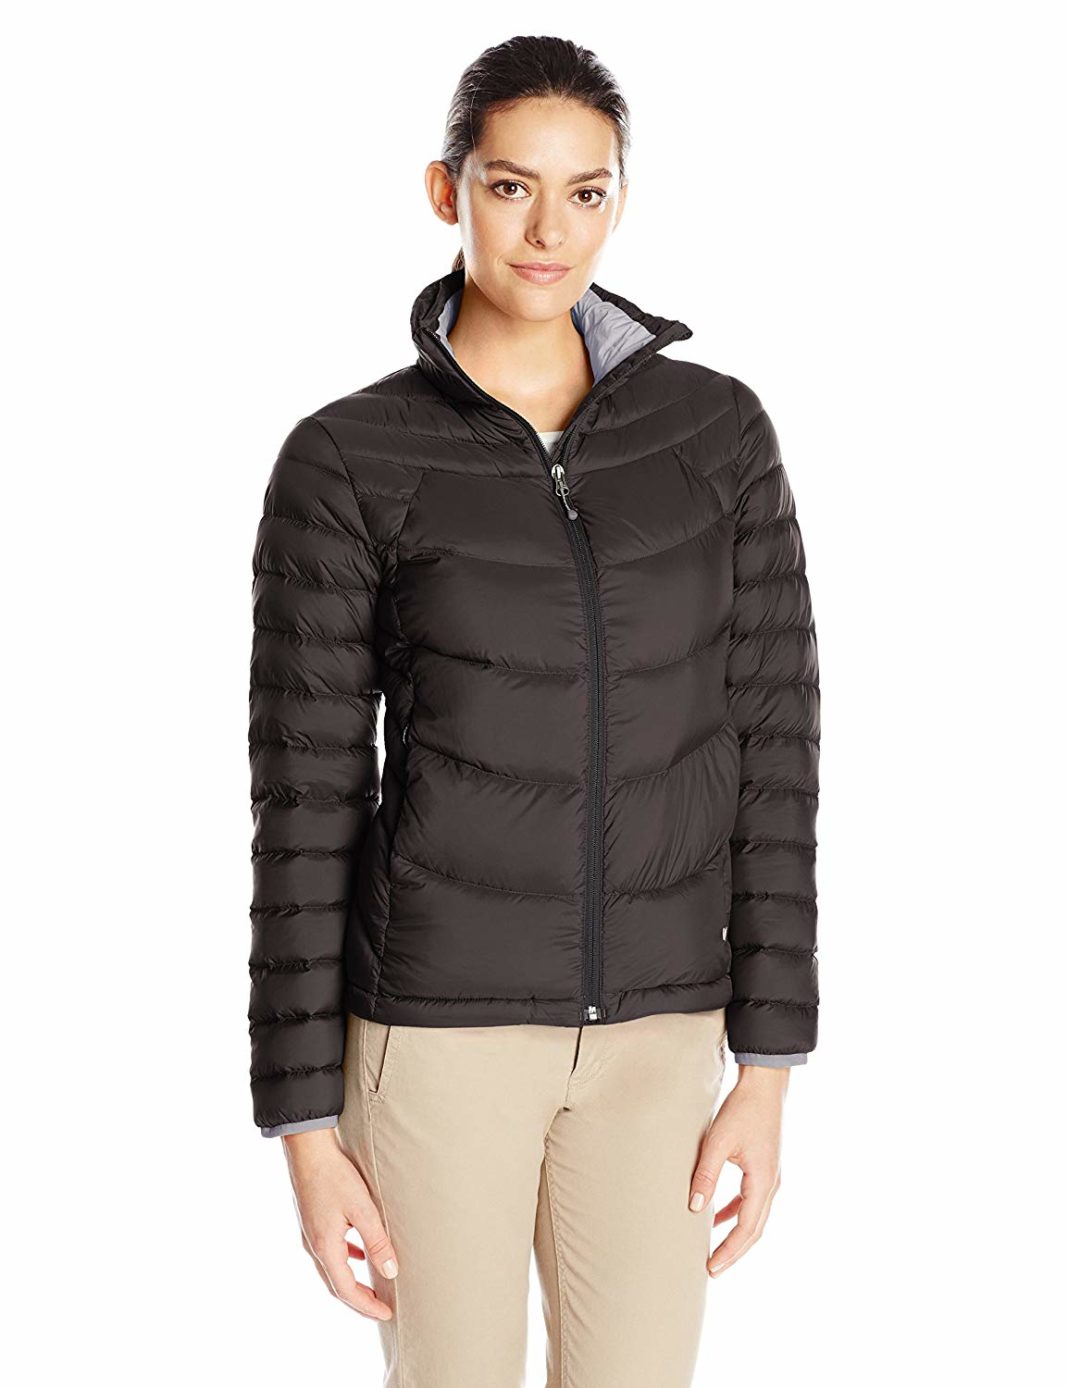 best down jackets for women - White Sierra